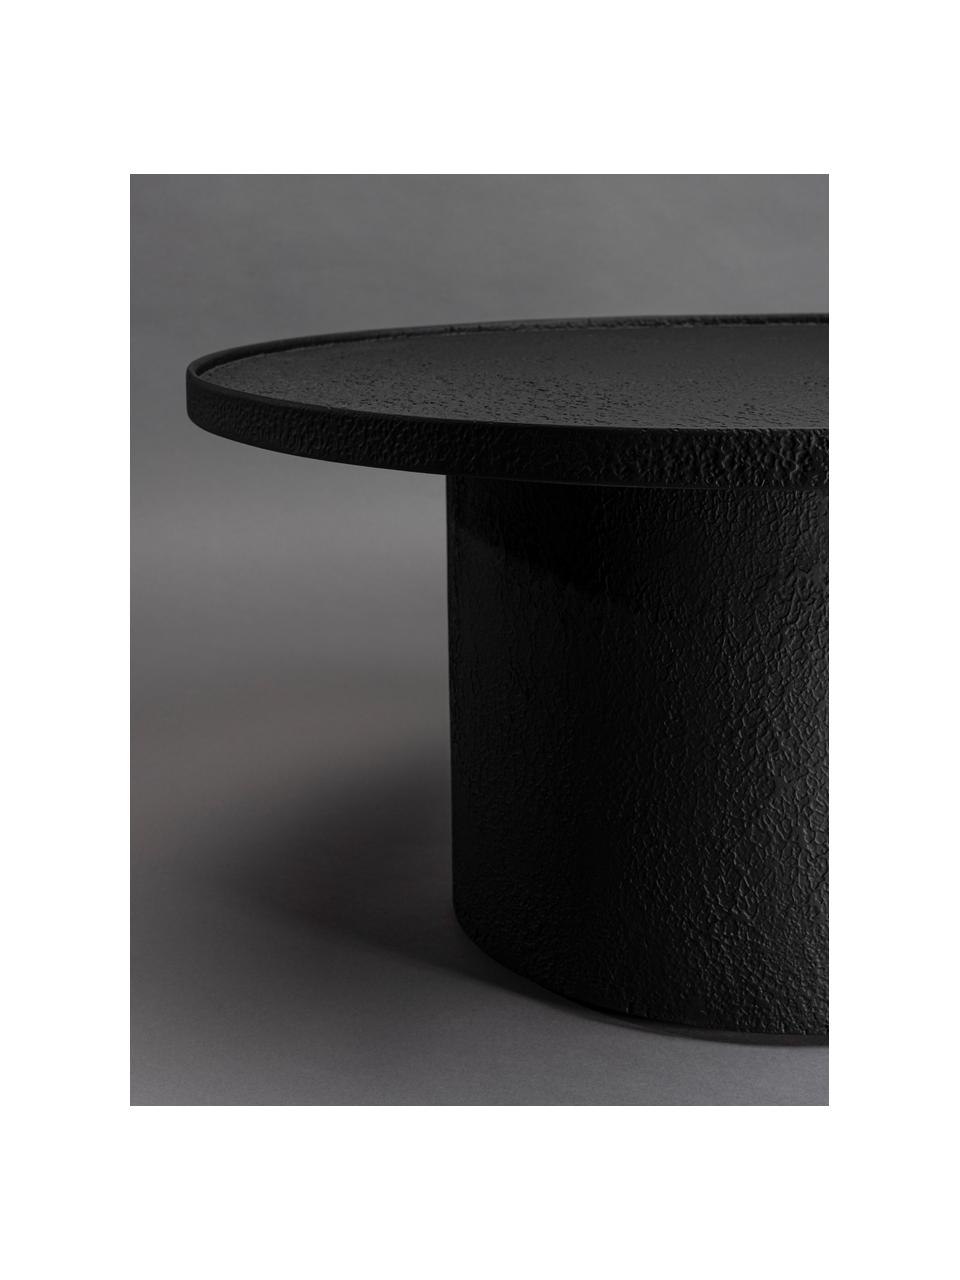 Runder Couchtisch Winston, Holz, schwarz lackiert, Ø 70 cm